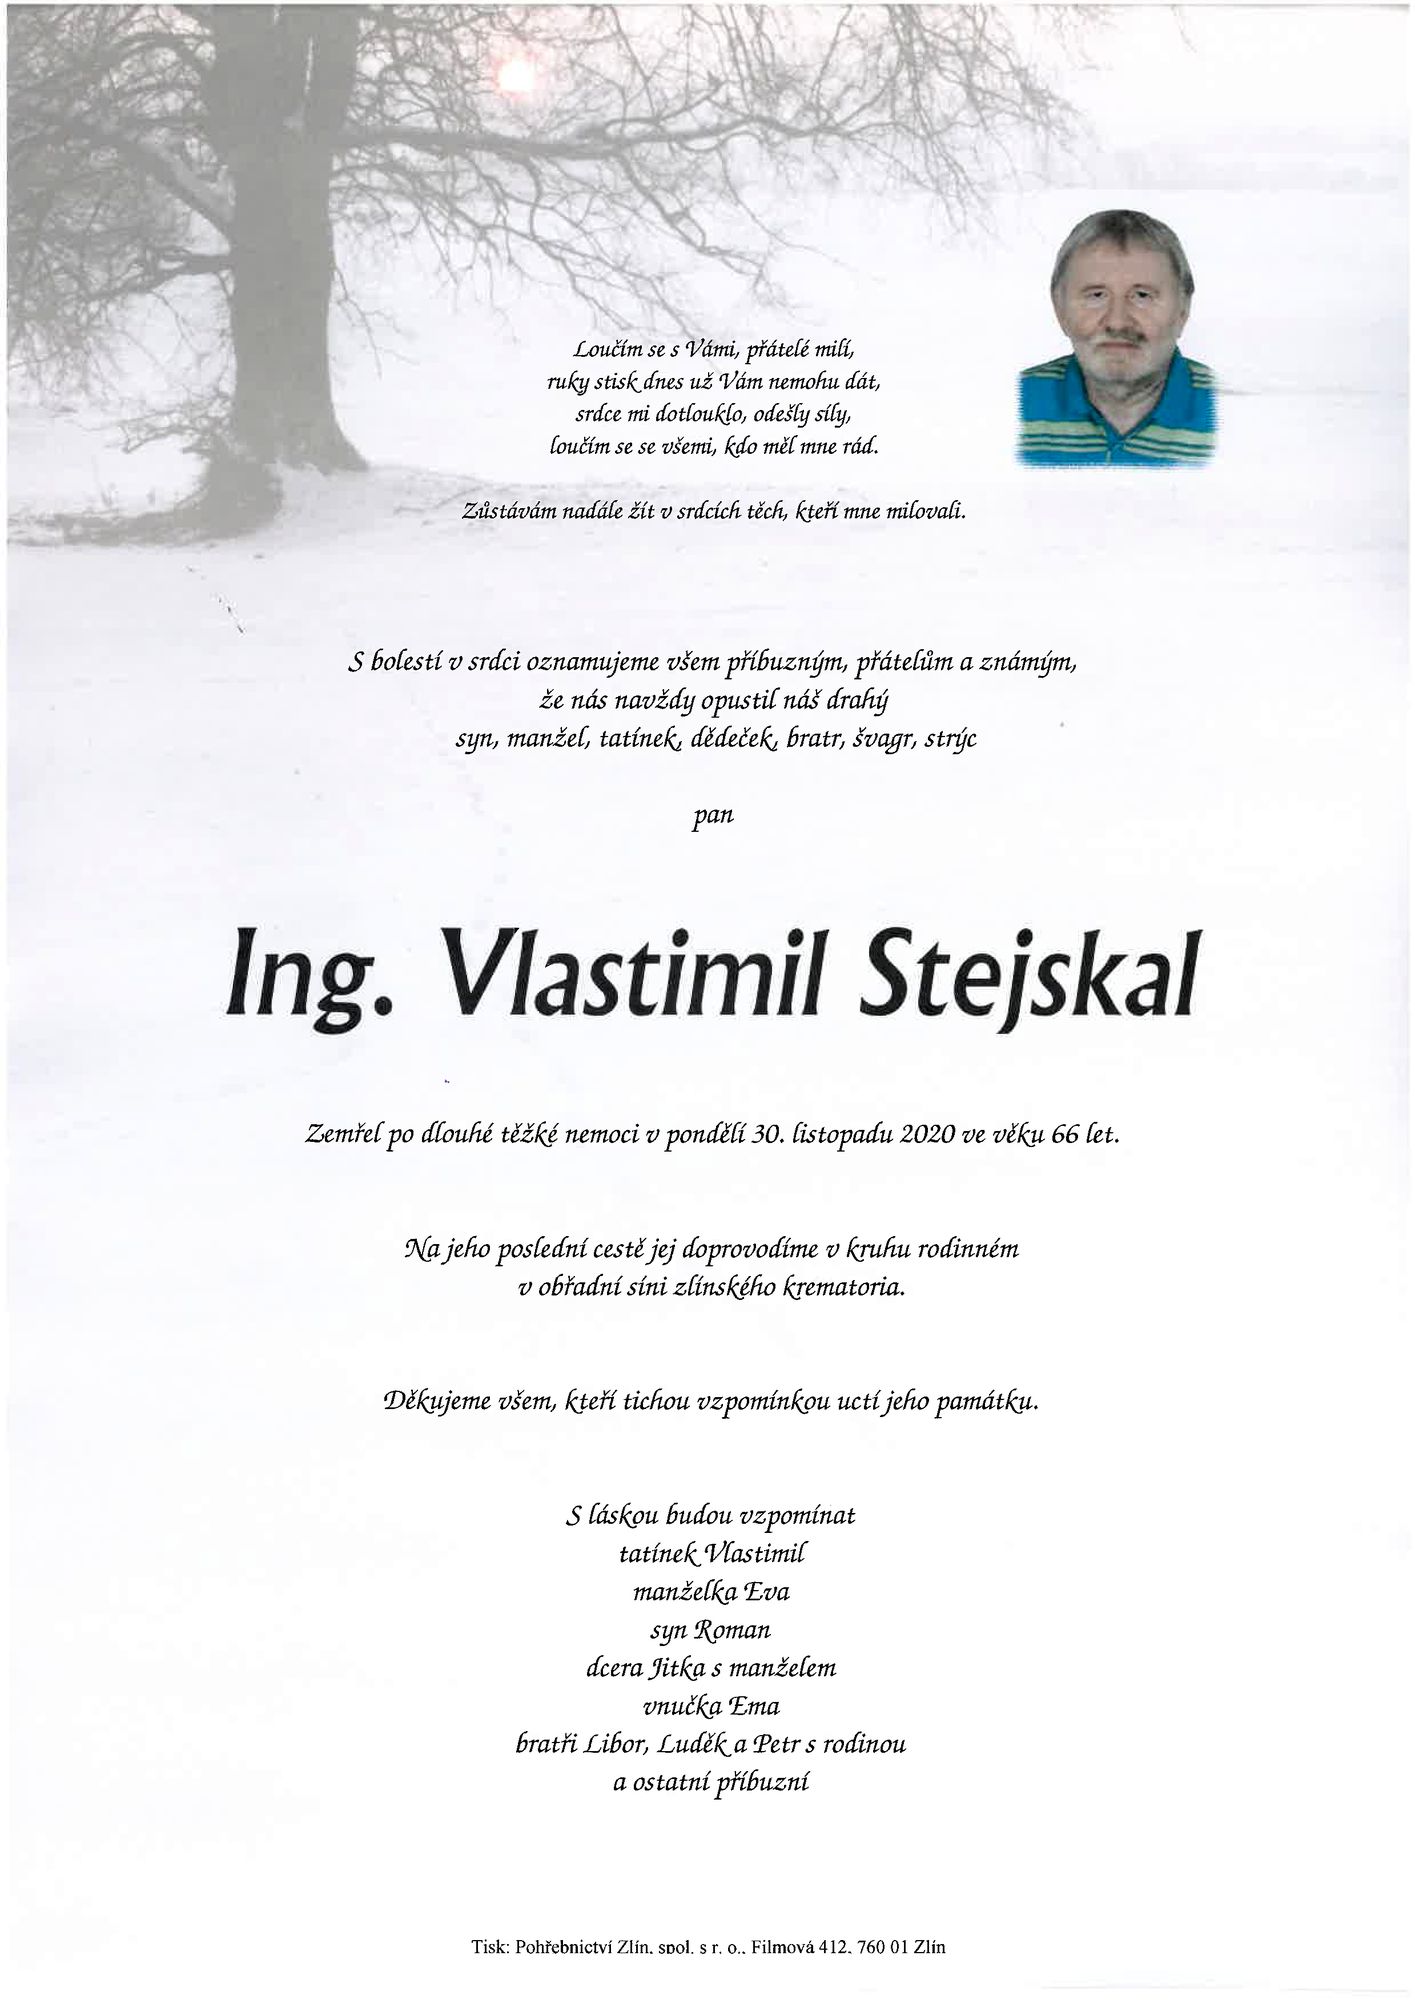 Ing. Vlastimil Stejskal